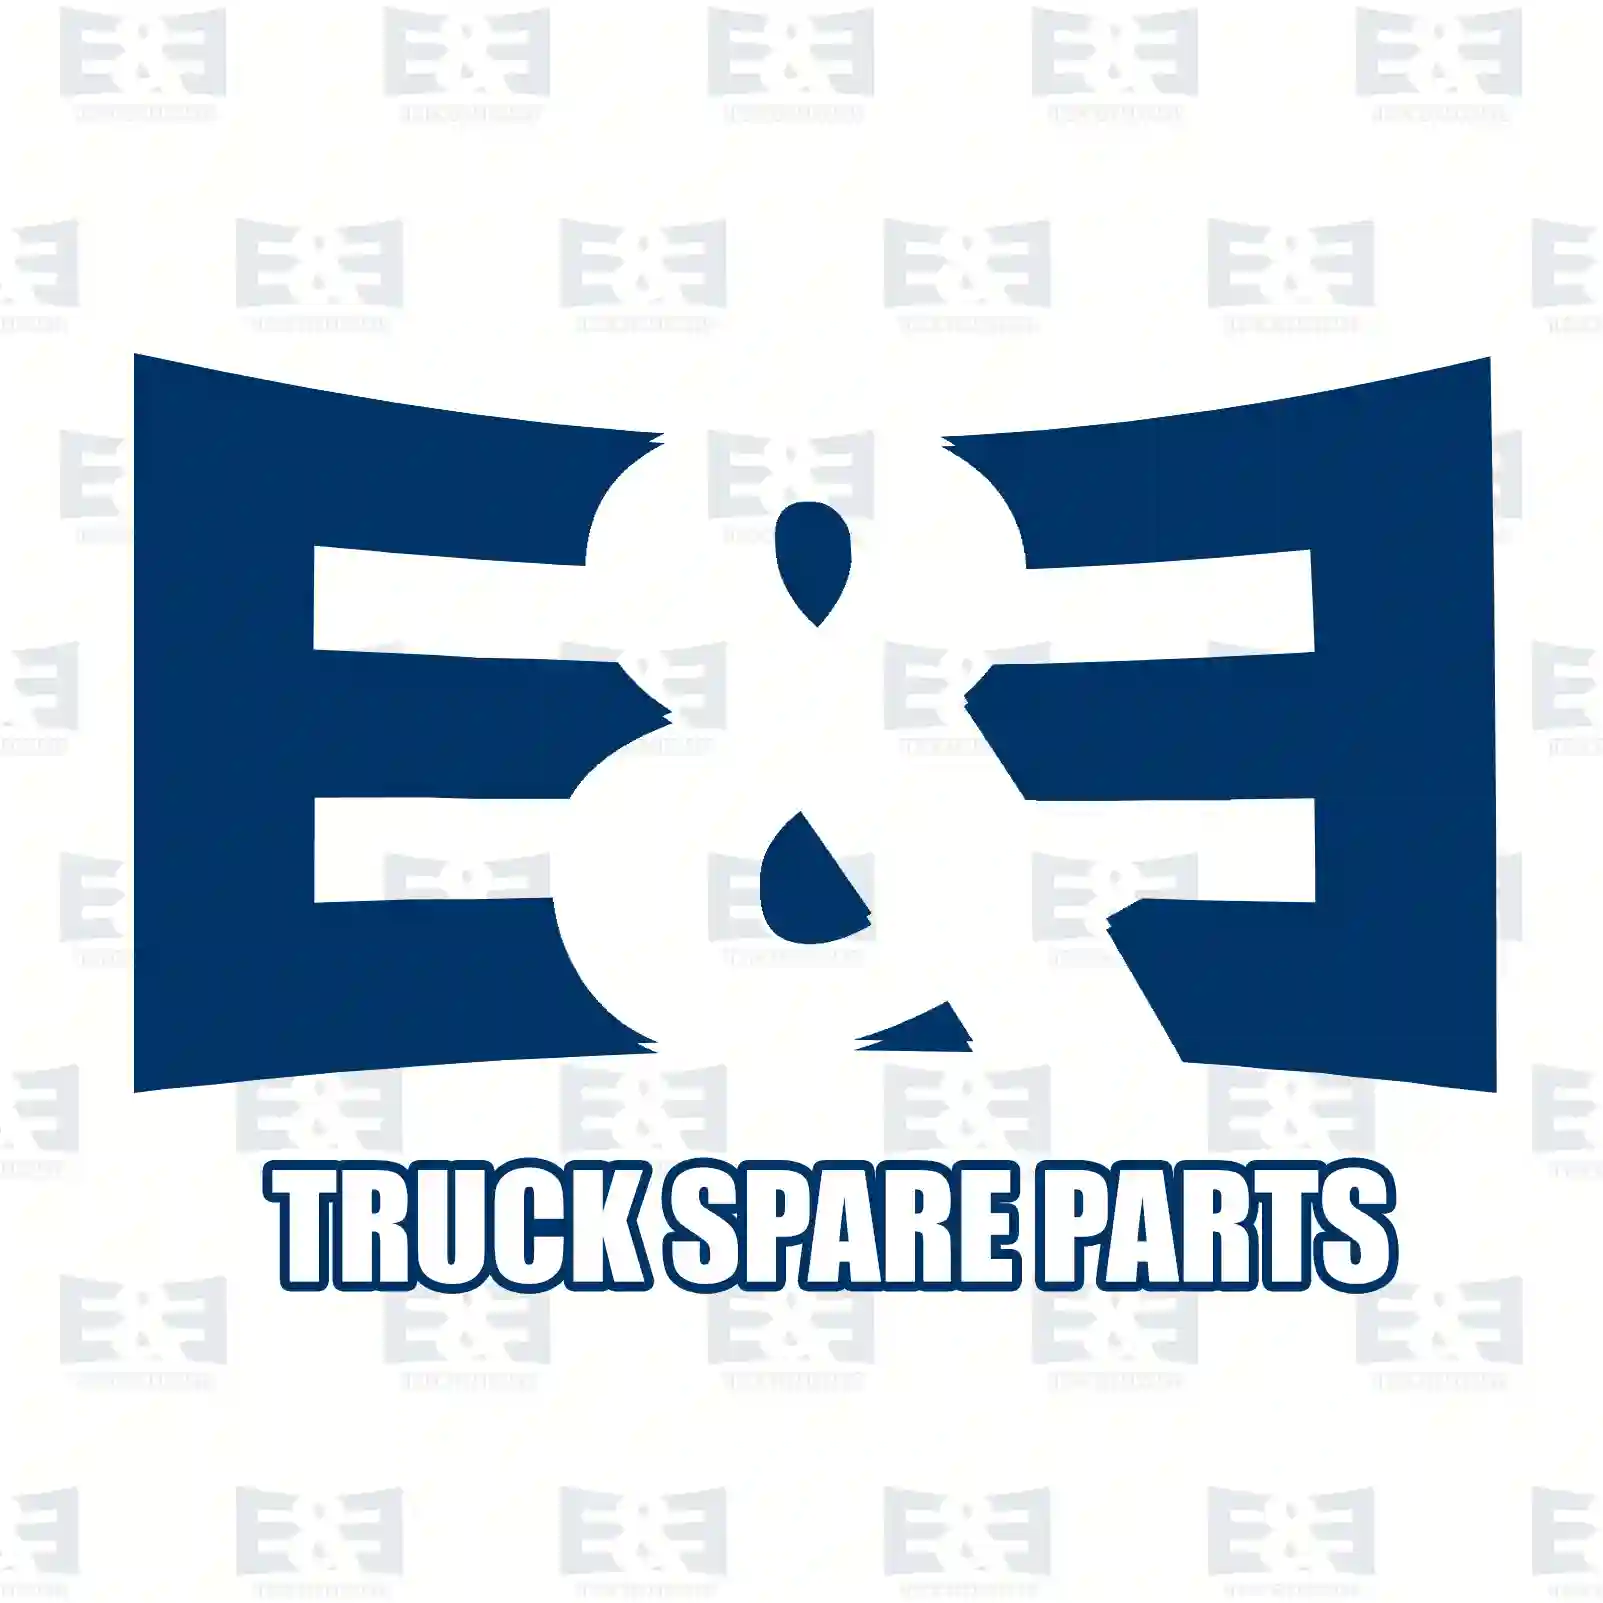 Gear, camshaft, 2E2206053, 7420849147, 20849147, 8148100 ||  2E2206053 E&E Truck Spare Parts | Truck Spare Parts, Auotomotive Spare Parts Gear, camshaft, 2E2206053, 7420849147, 20849147, 8148100 ||  2E2206053 E&E Truck Spare Parts | Truck Spare Parts, Auotomotive Spare Parts